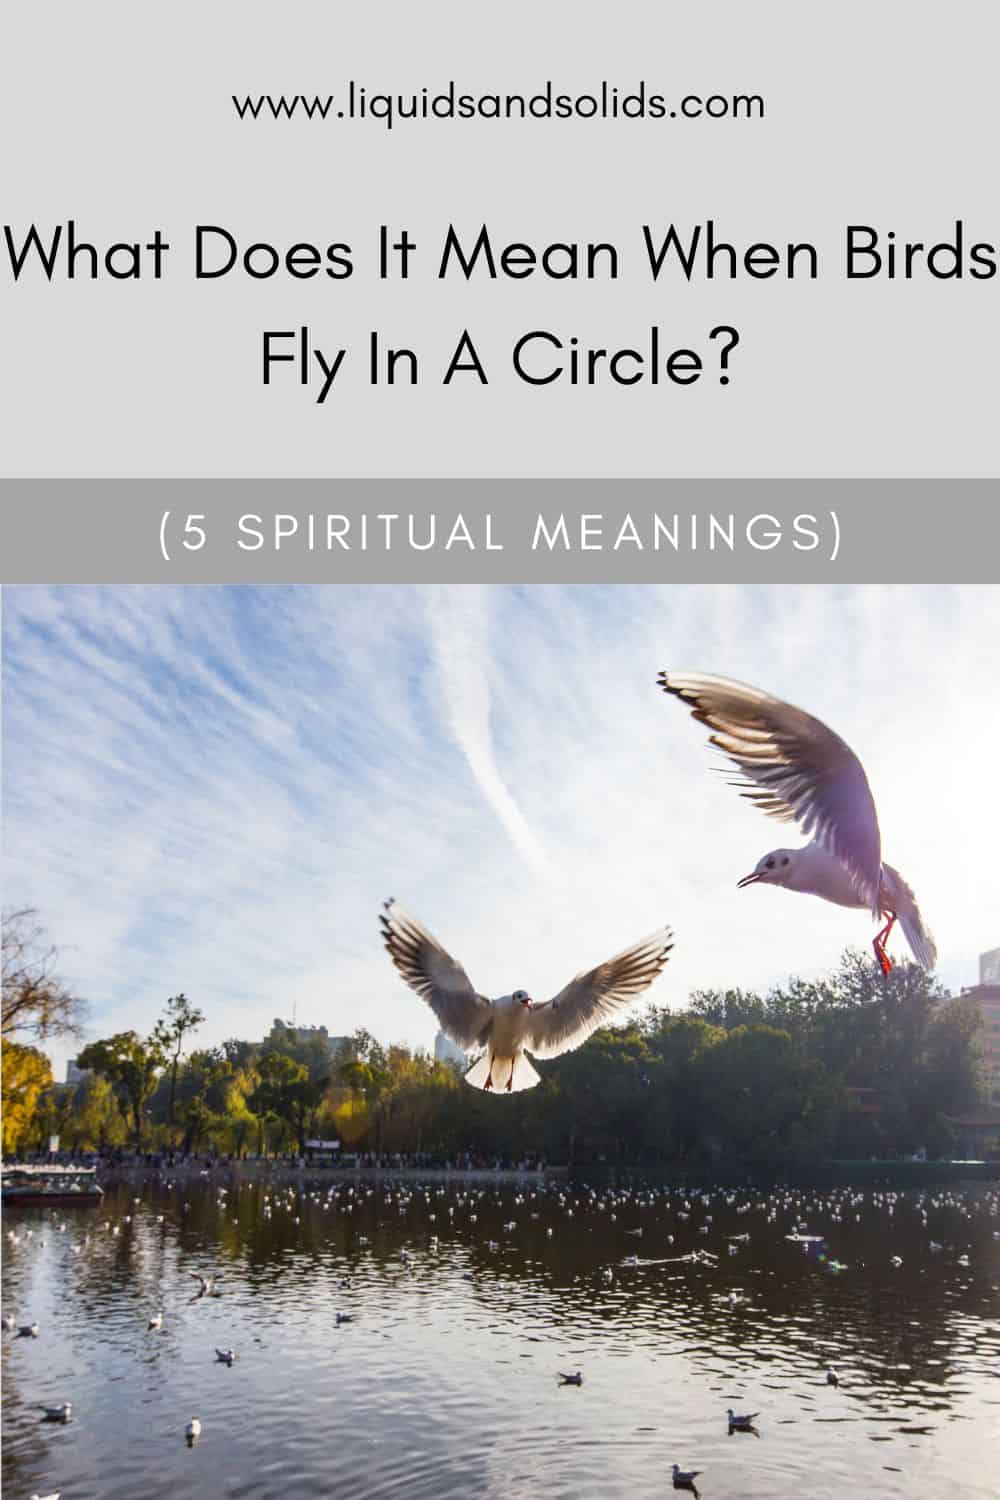  Mida tähendab see, kui linnud lendavad ringis? (5 vaimset tähendust)